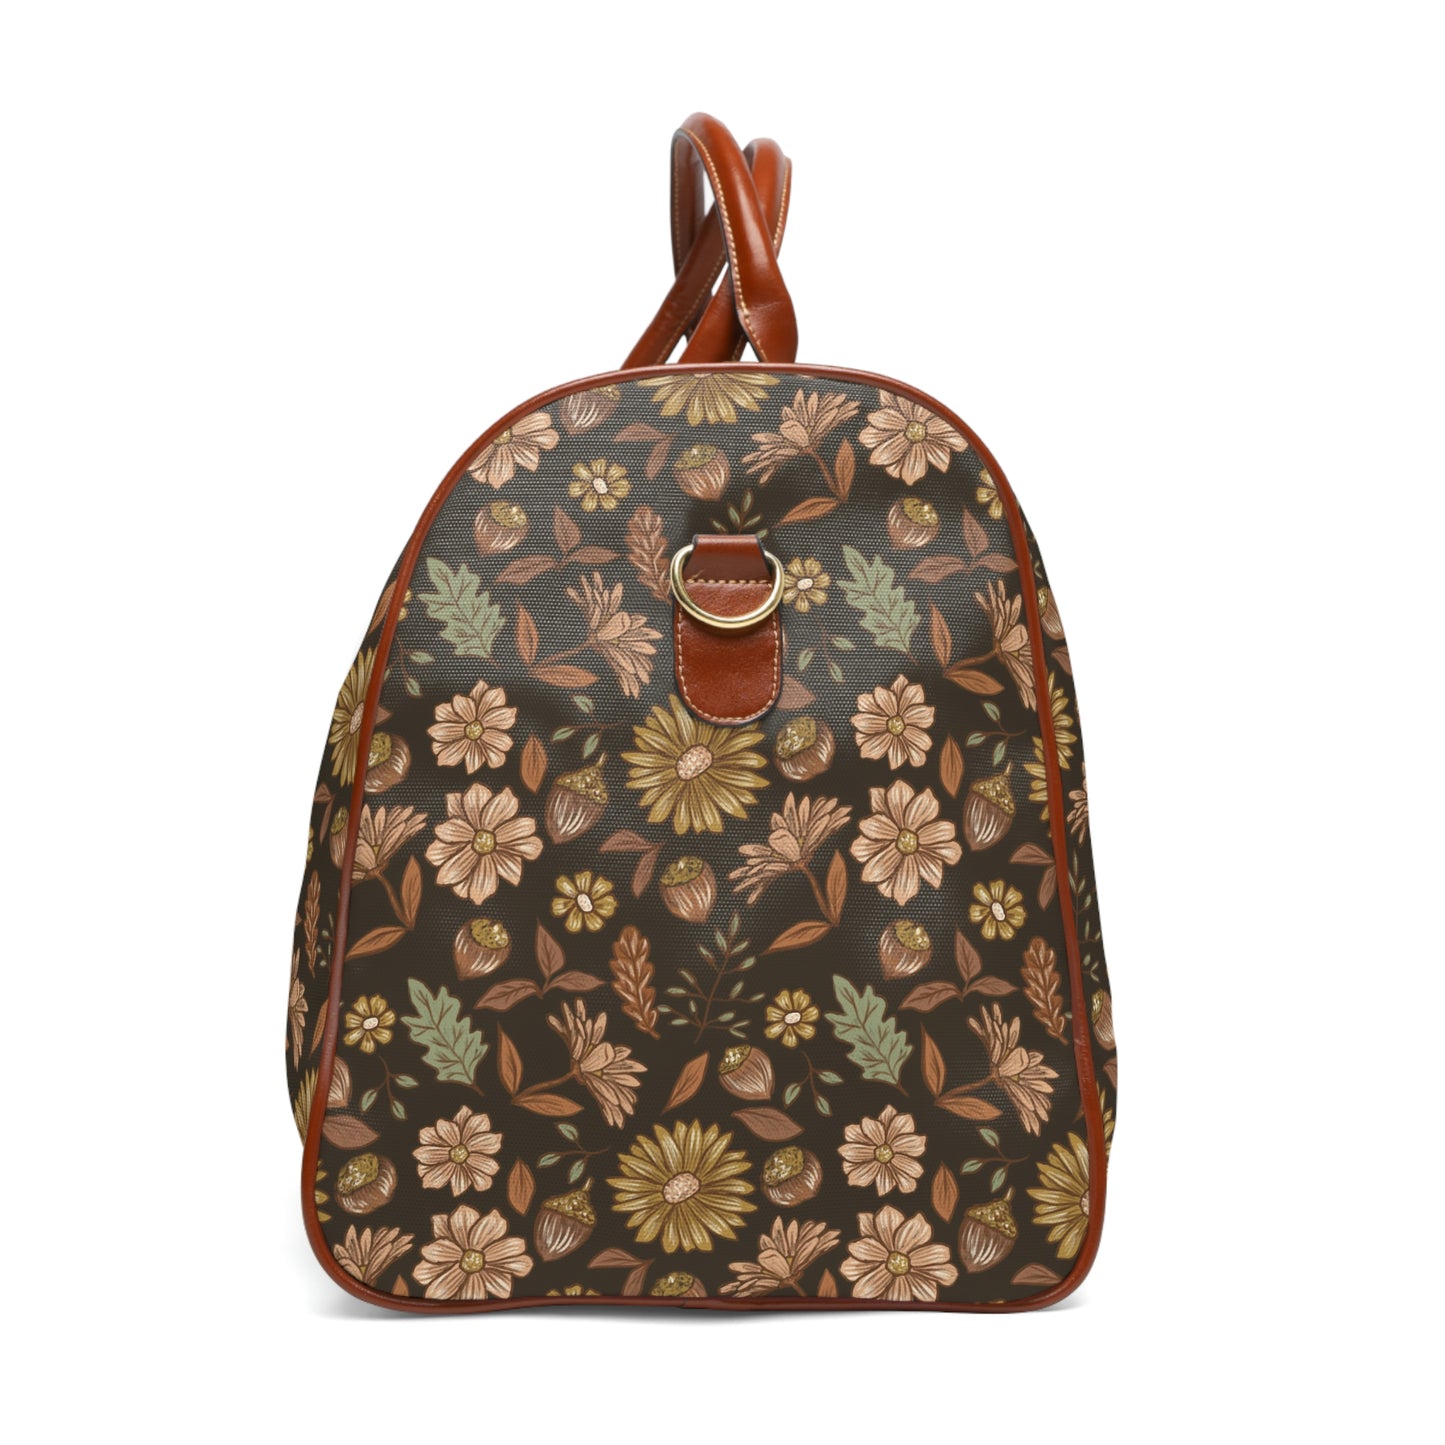 Acorn Leaves - Dark Background - Waterproof Travel Bag